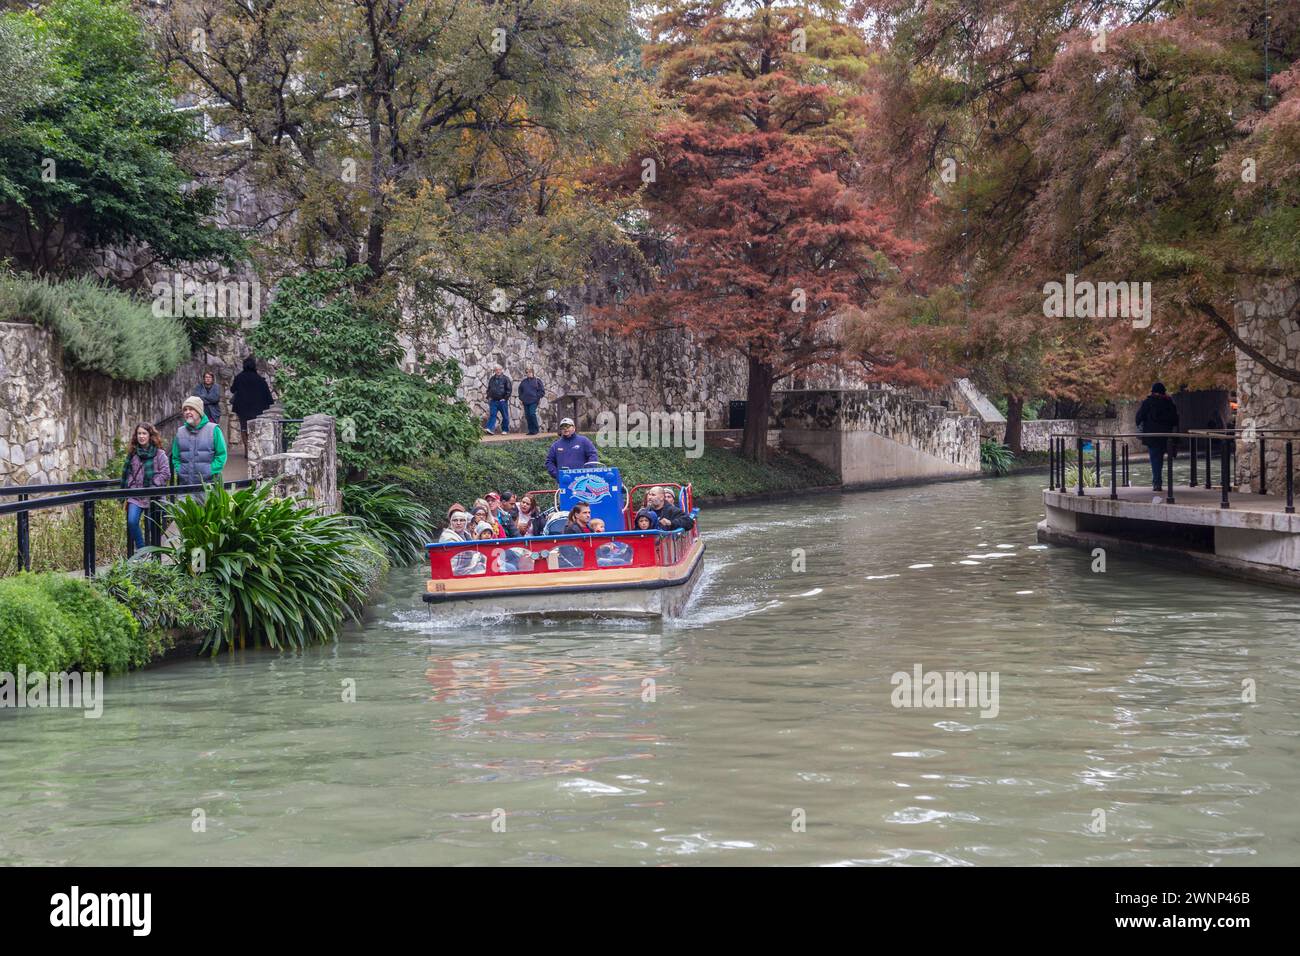 Les touristes montent à bord du bateau de croisière Rio San Antonio à travers le River Walk dans le centre-ville de San Antonio, Texas Banque D'Images